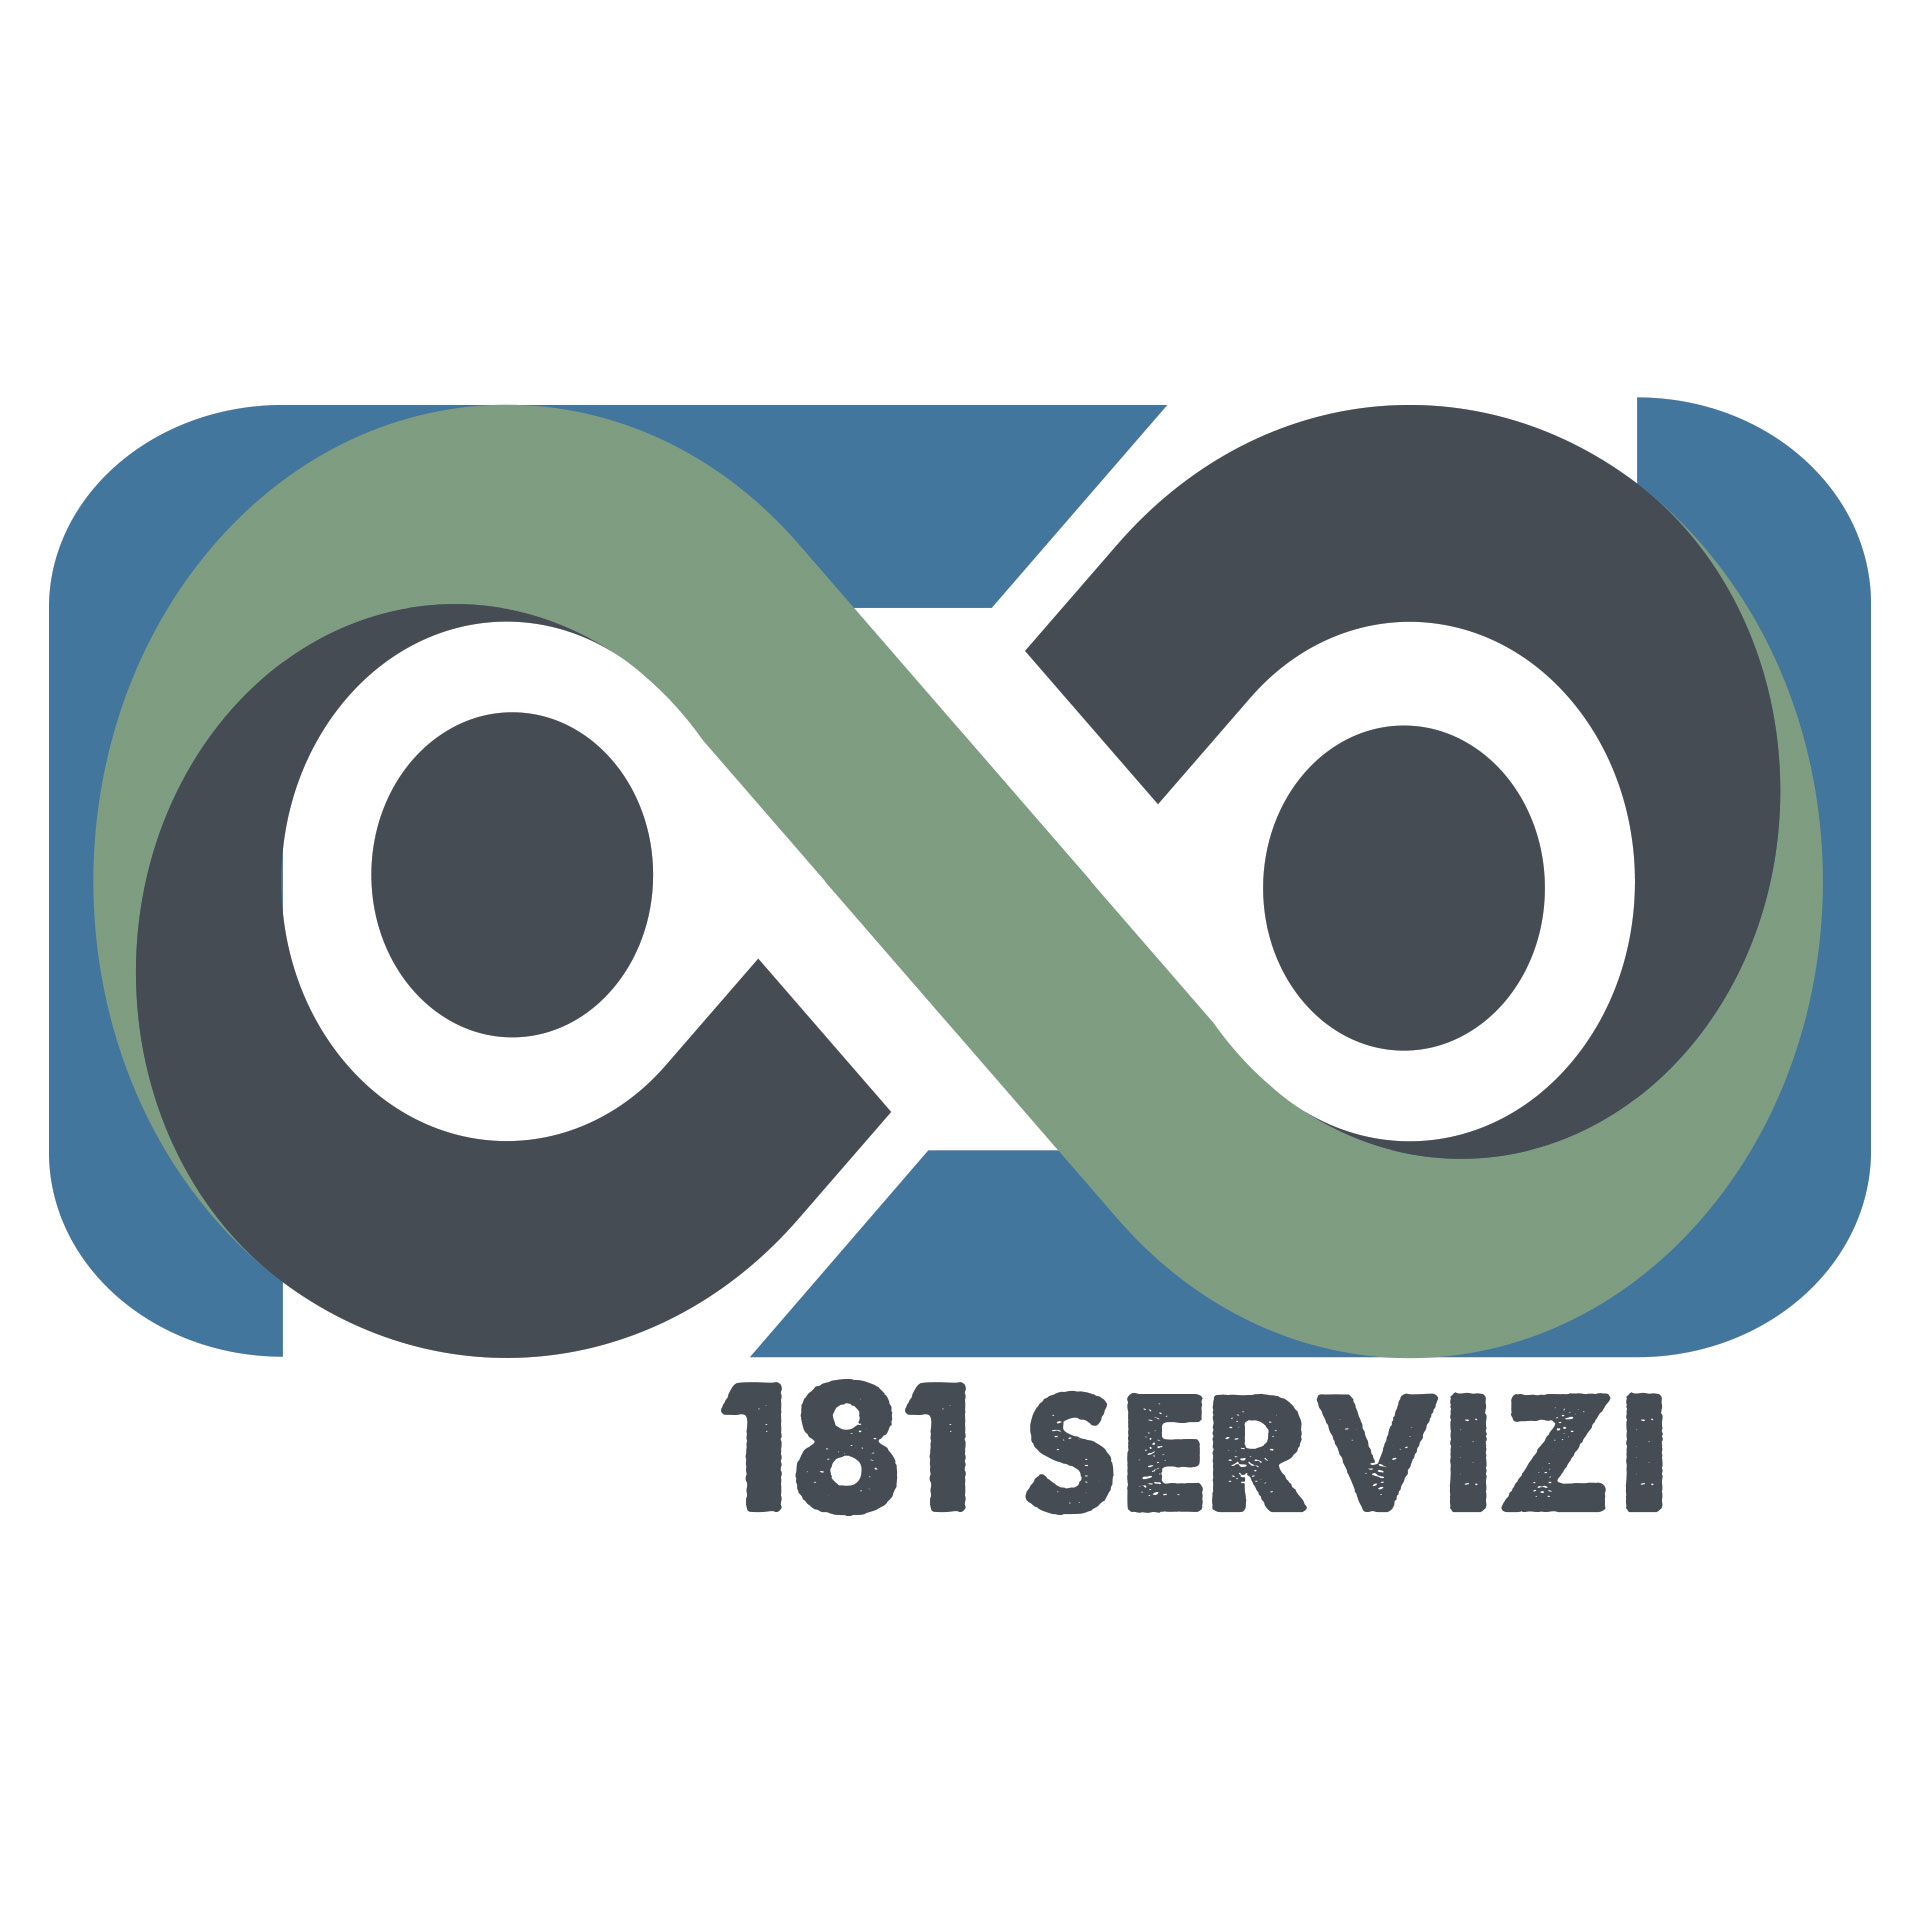 Logo: Cooperativa 181 - sfondo bianco | Linee che formano i numeri "181" e scritta "181 SERVIZI"